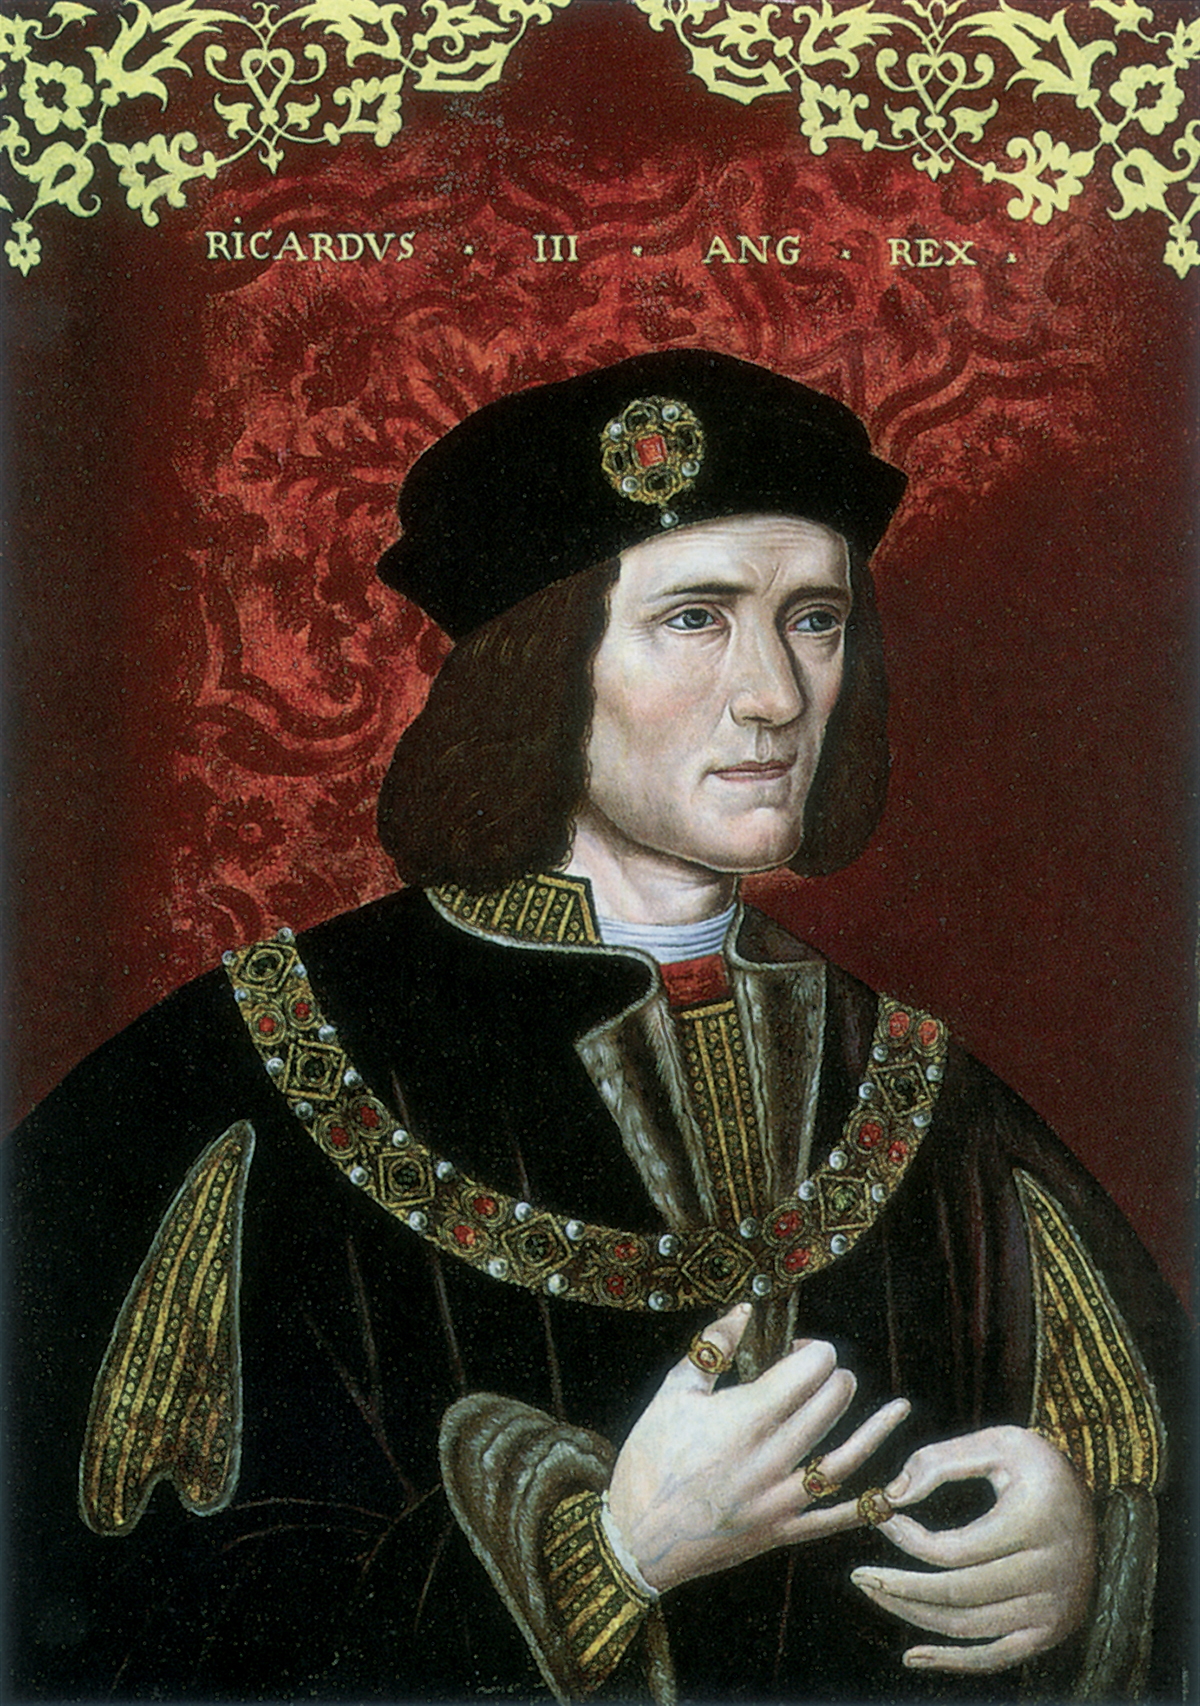 Richard IIIs Usurpation of the English Throne